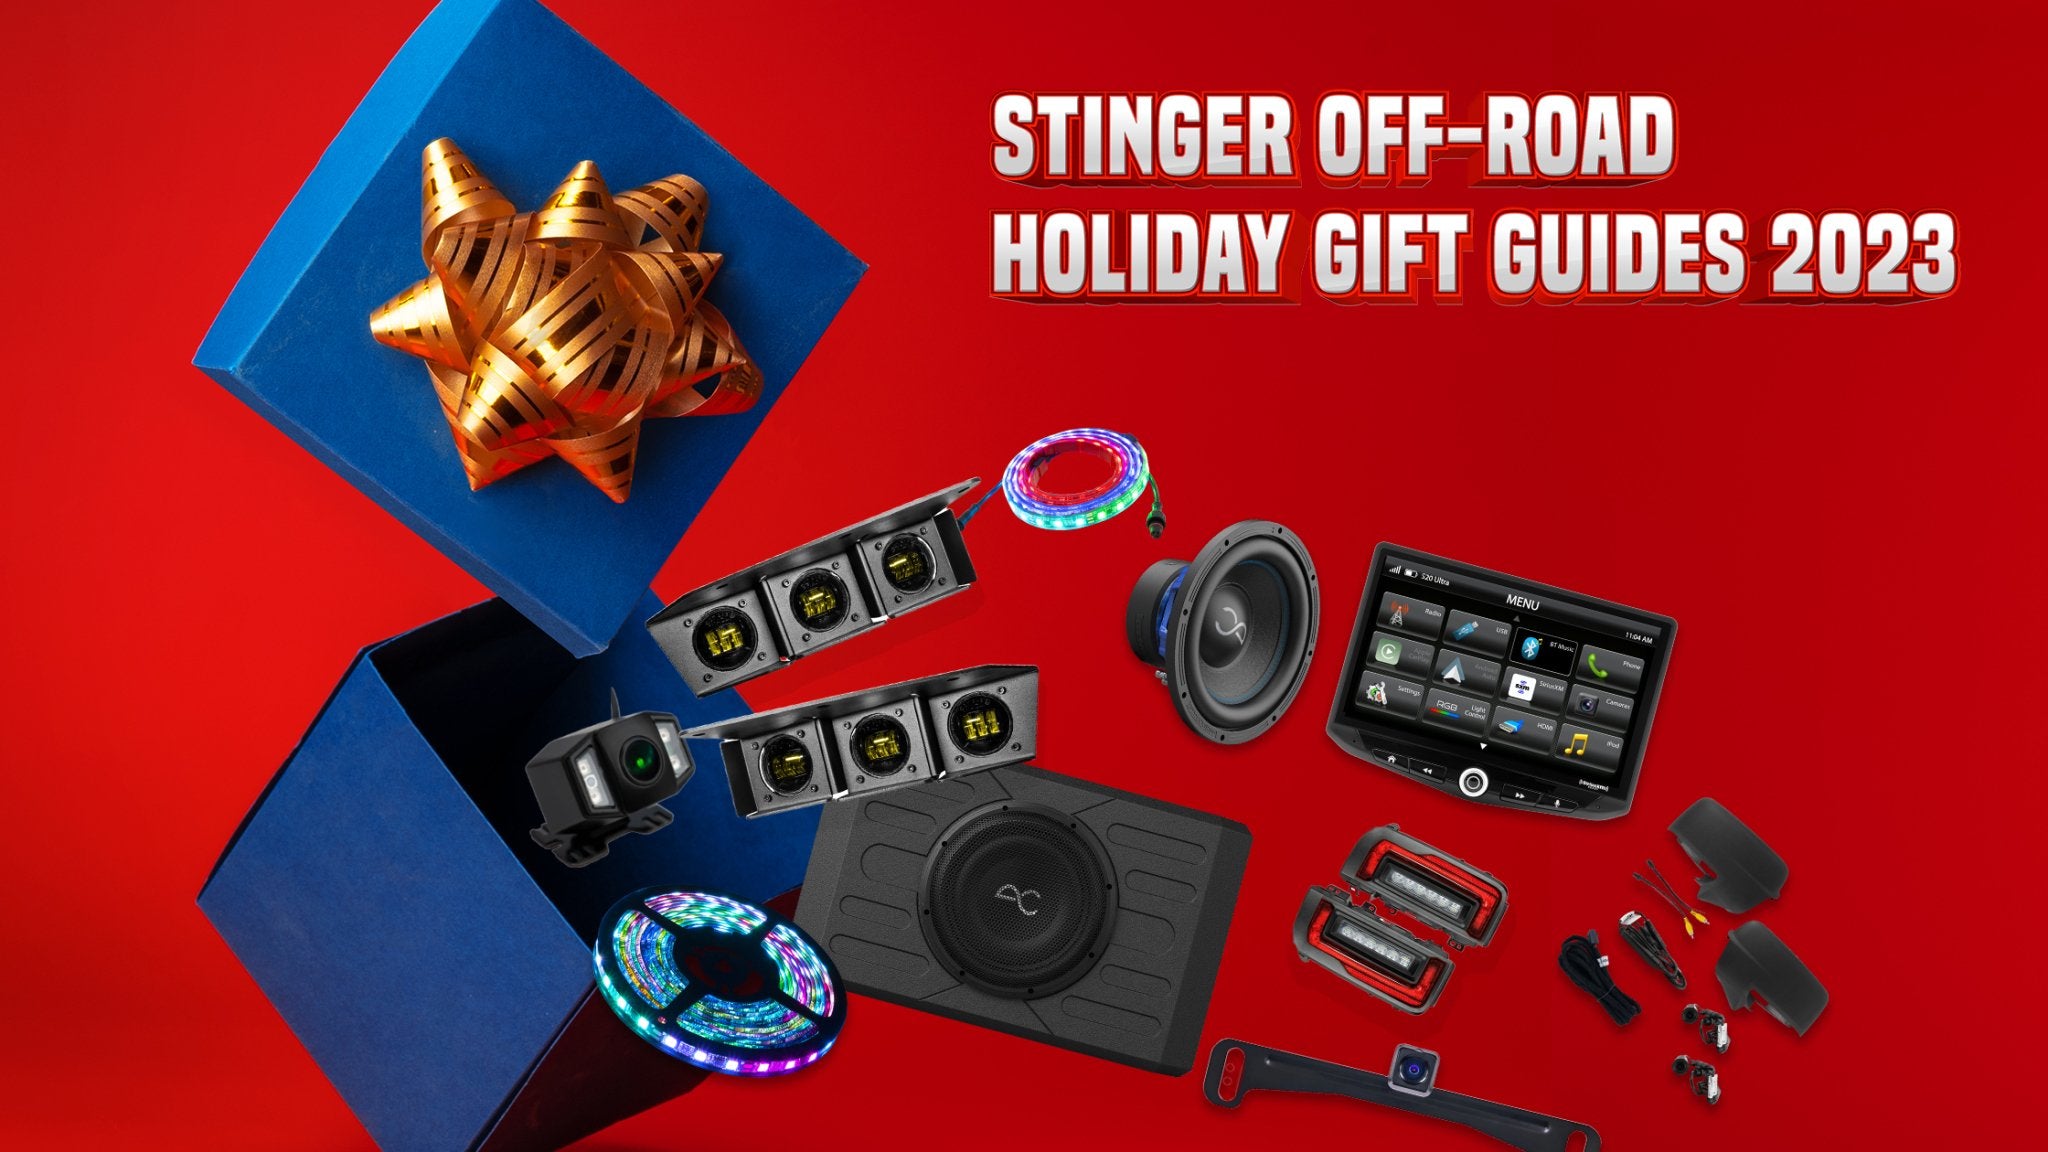 Stinger Holiday Gift Guides 2023 - Stinger